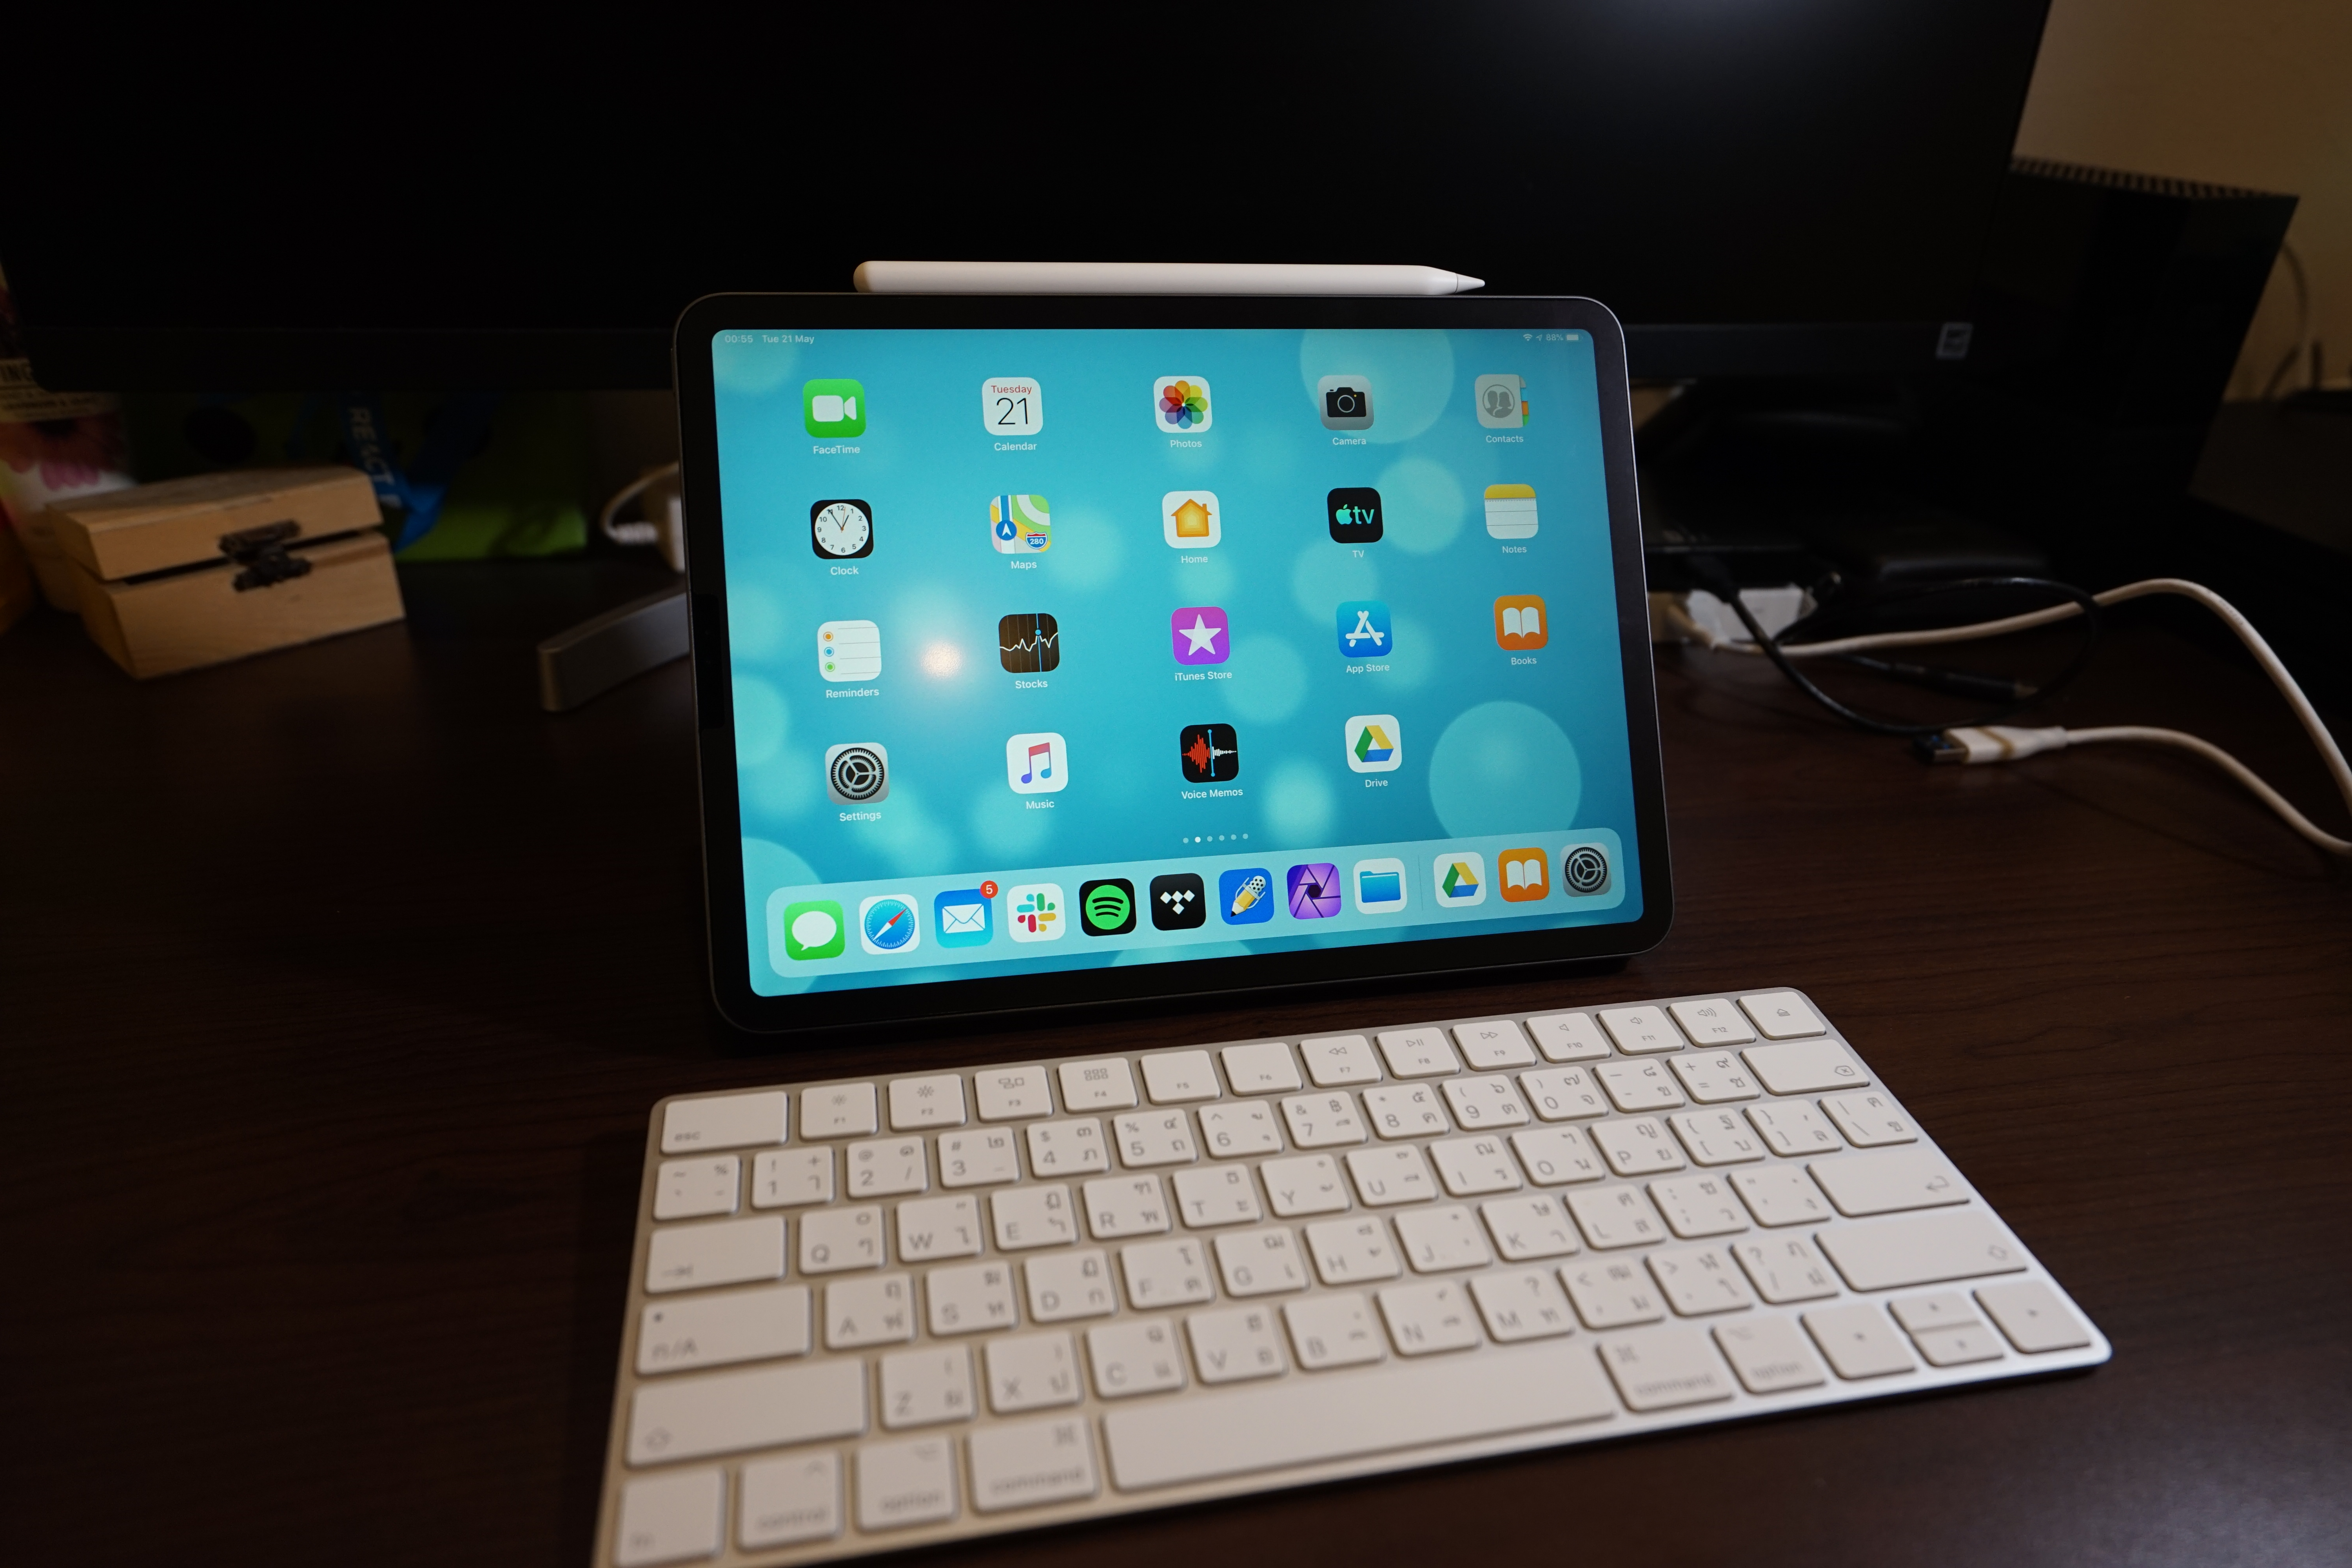 iPad Pro 11-inch 2018 with Magic Keyboard